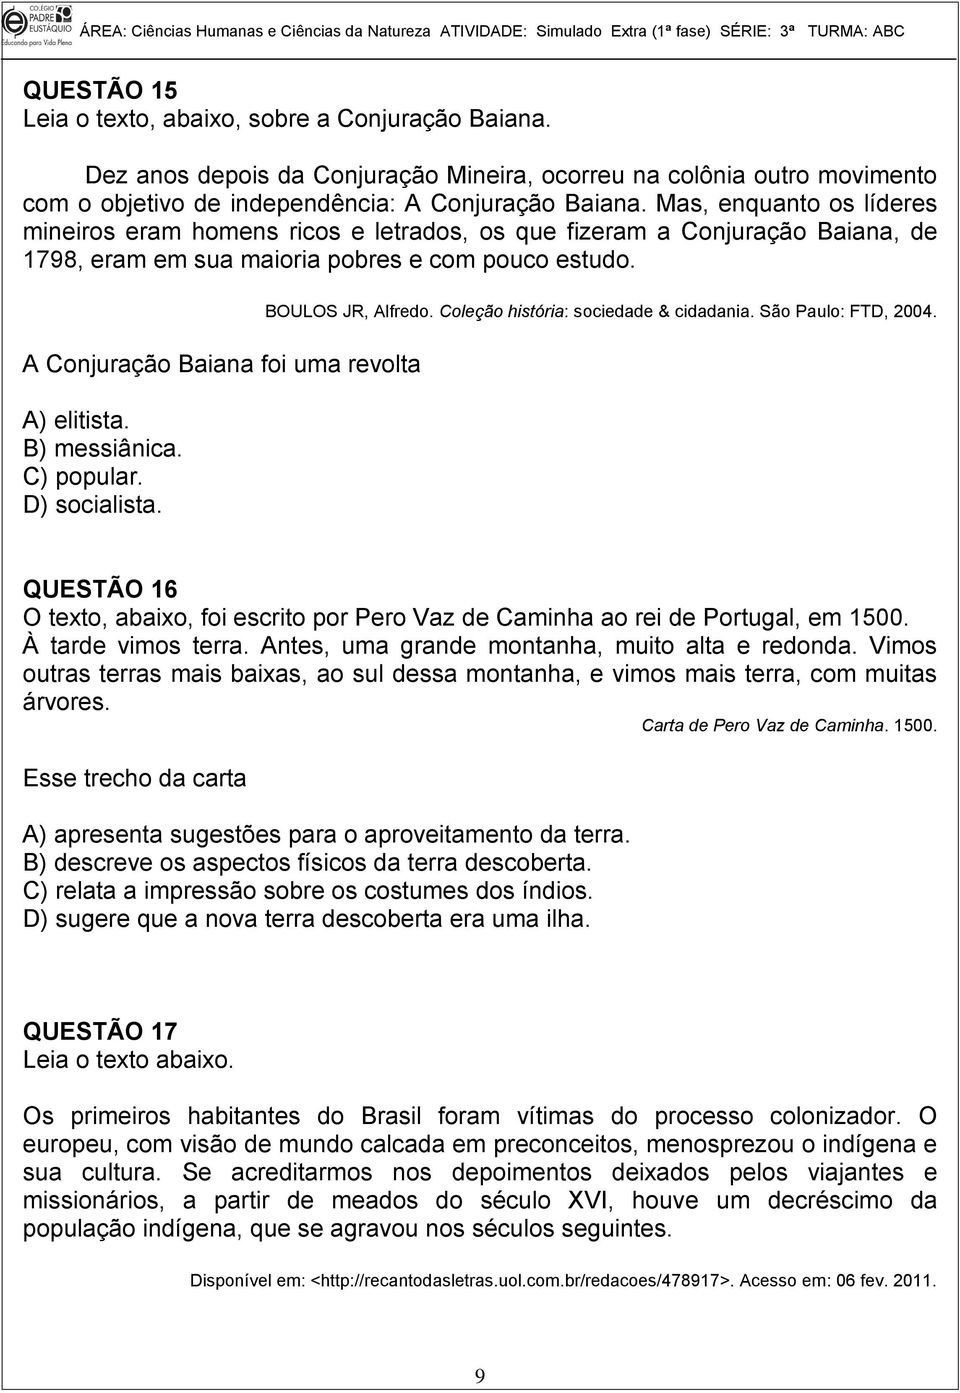 A Conjuração Baiana foi uma revolta A) elitista. B) messiânica. C) popular. D) socialista. BOULOS JR, Alfredo. Coleção história: sociedade & cidadania. São Paulo: FTD, 2004.